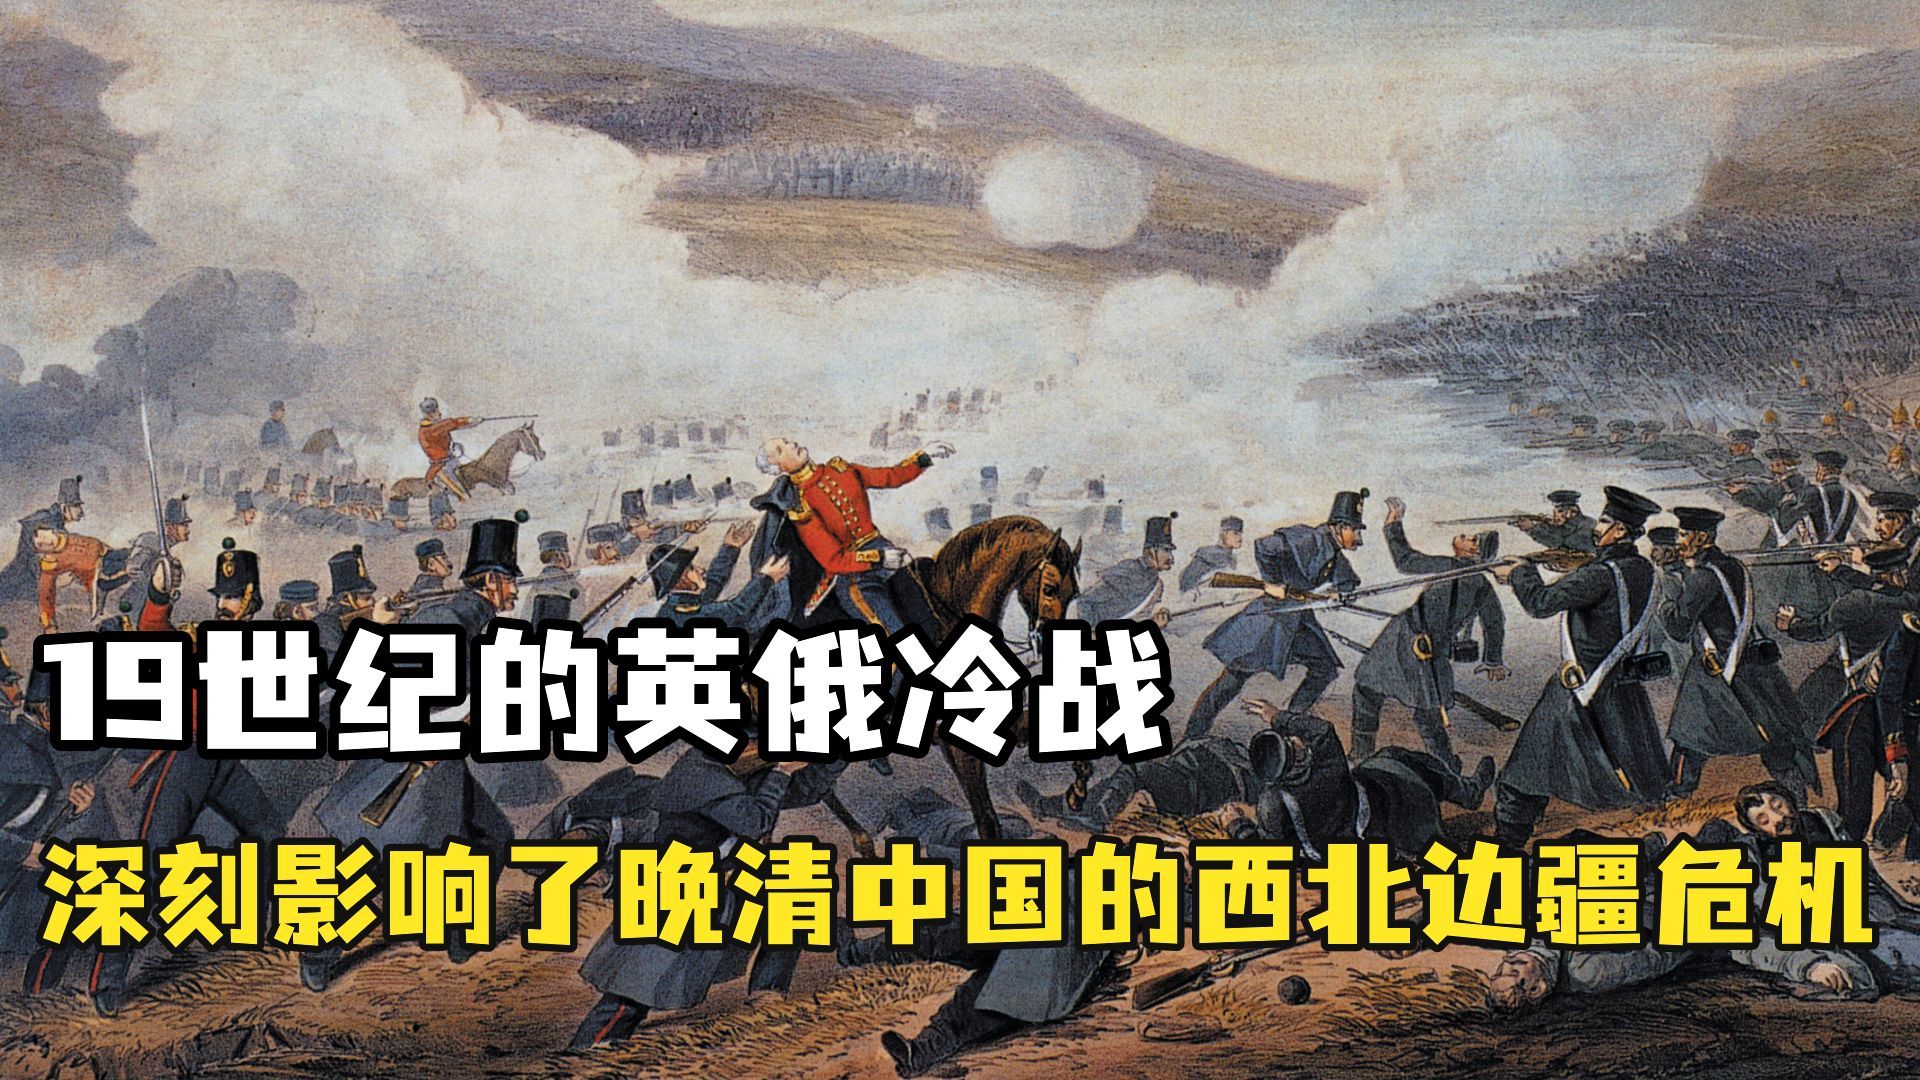 19世纪的英俄冷战深刻影响了晚清中国的西北边疆危机